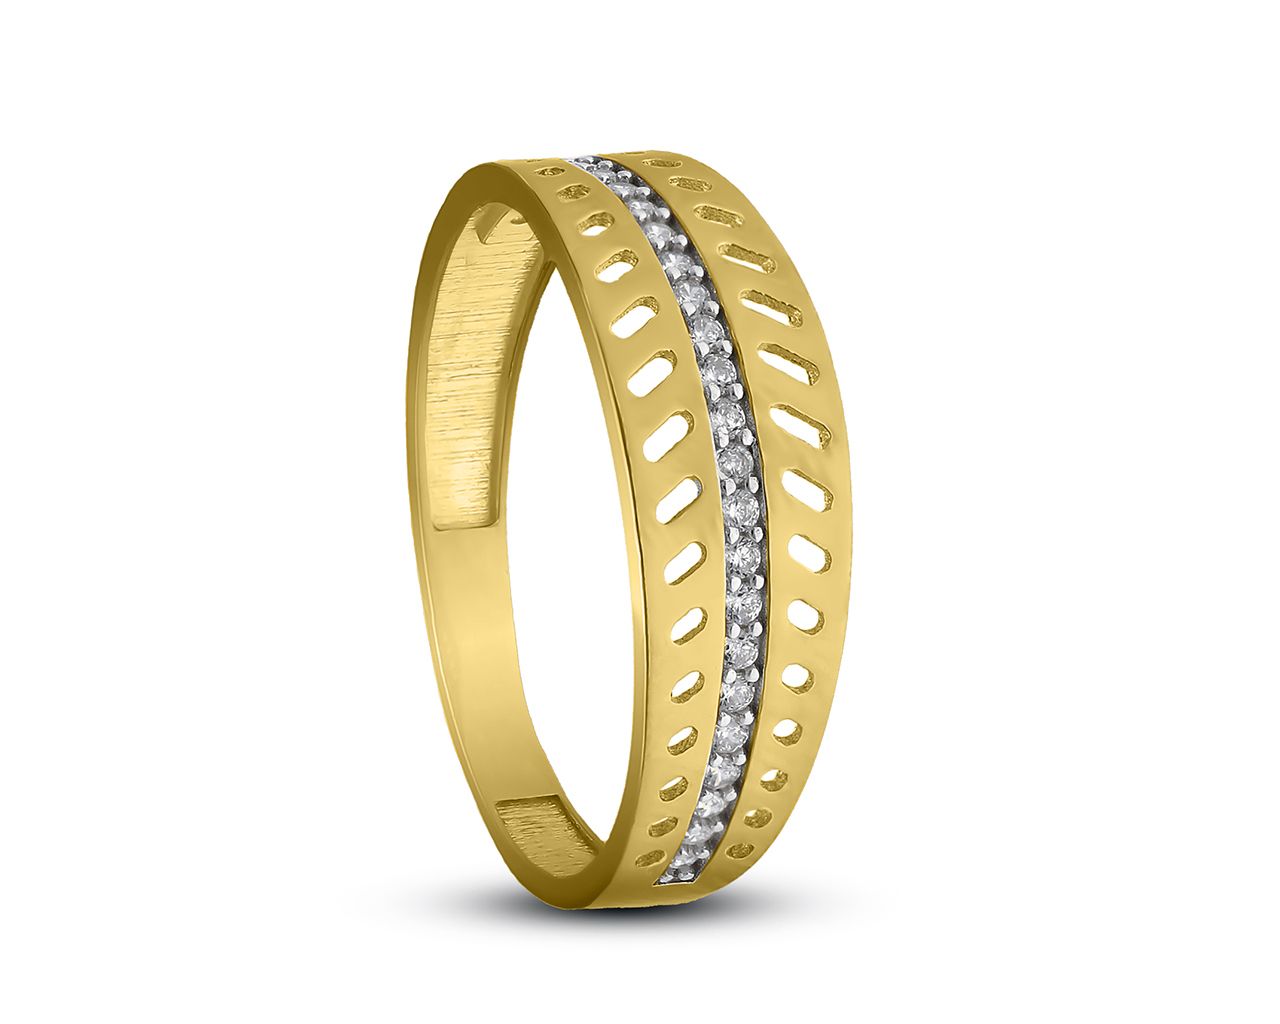 Złoty pierścionek pr.585 z pięknymi kamieniami